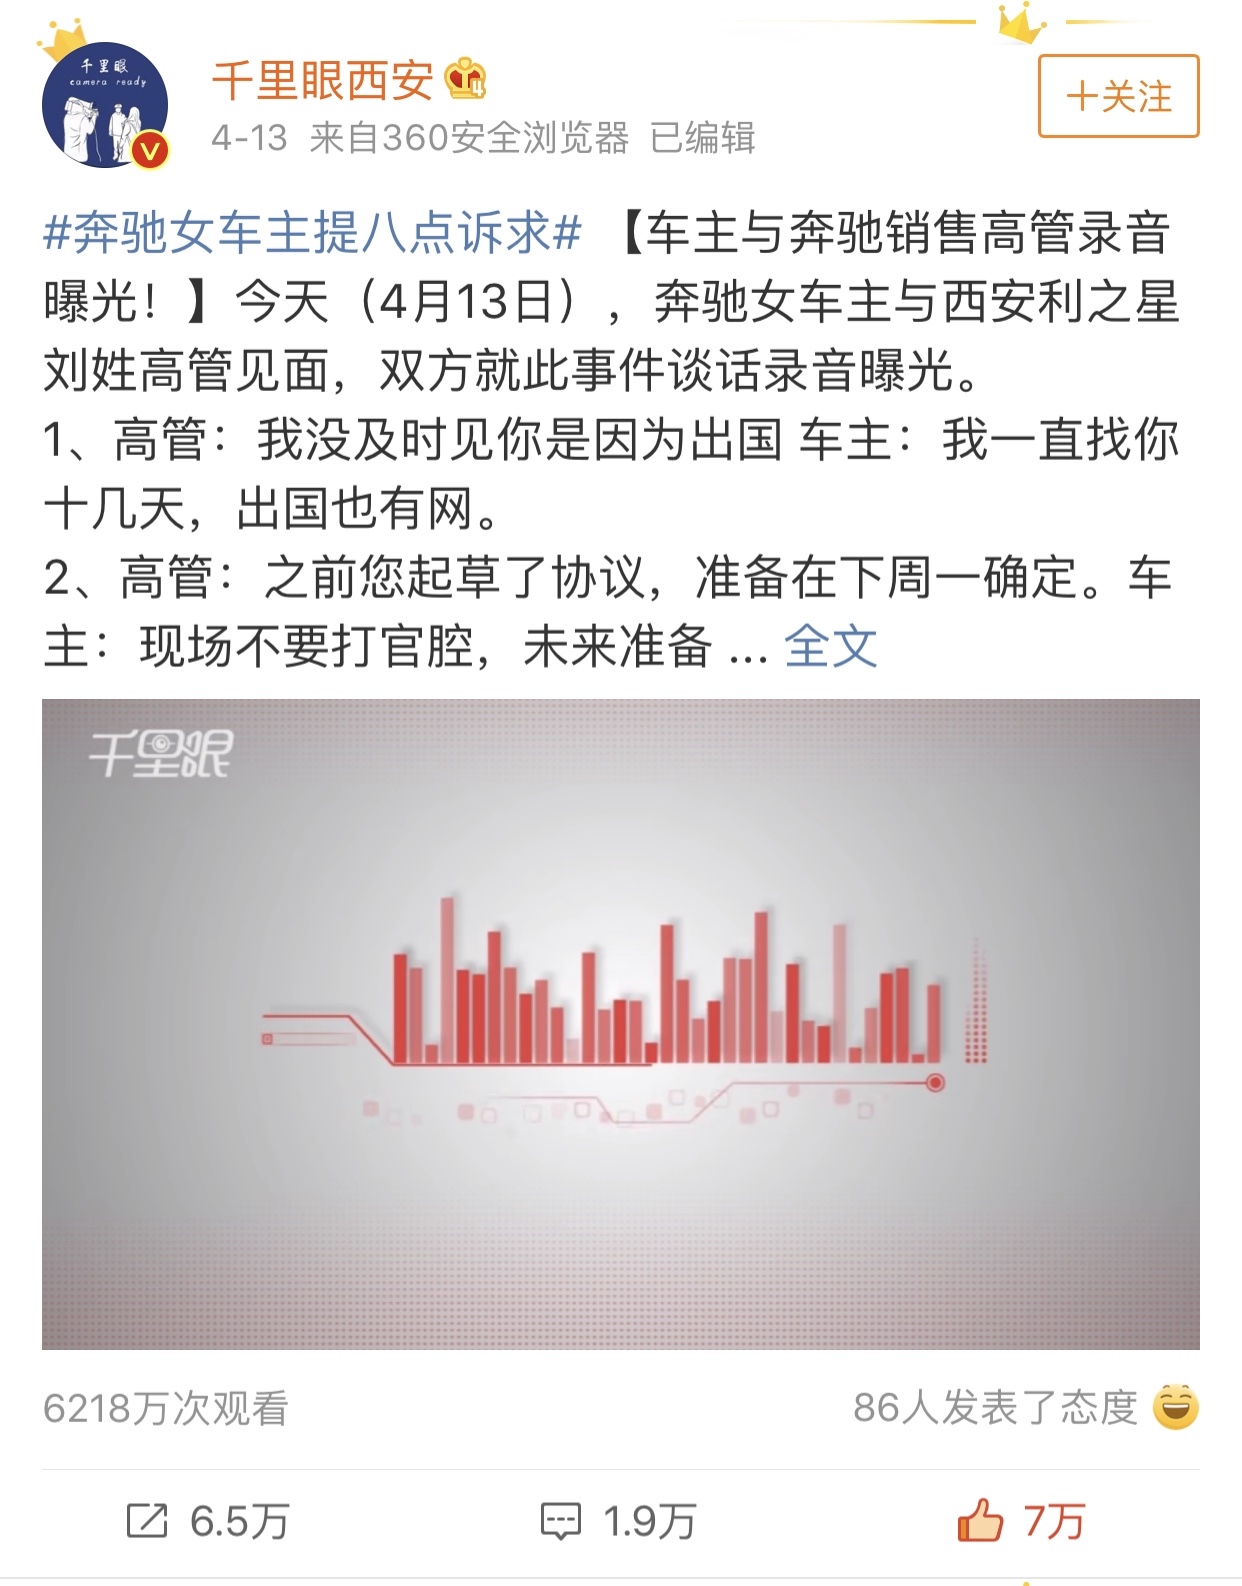 搜狐视频千里眼首公布“奔驰女维权录音” 引发舆论关注